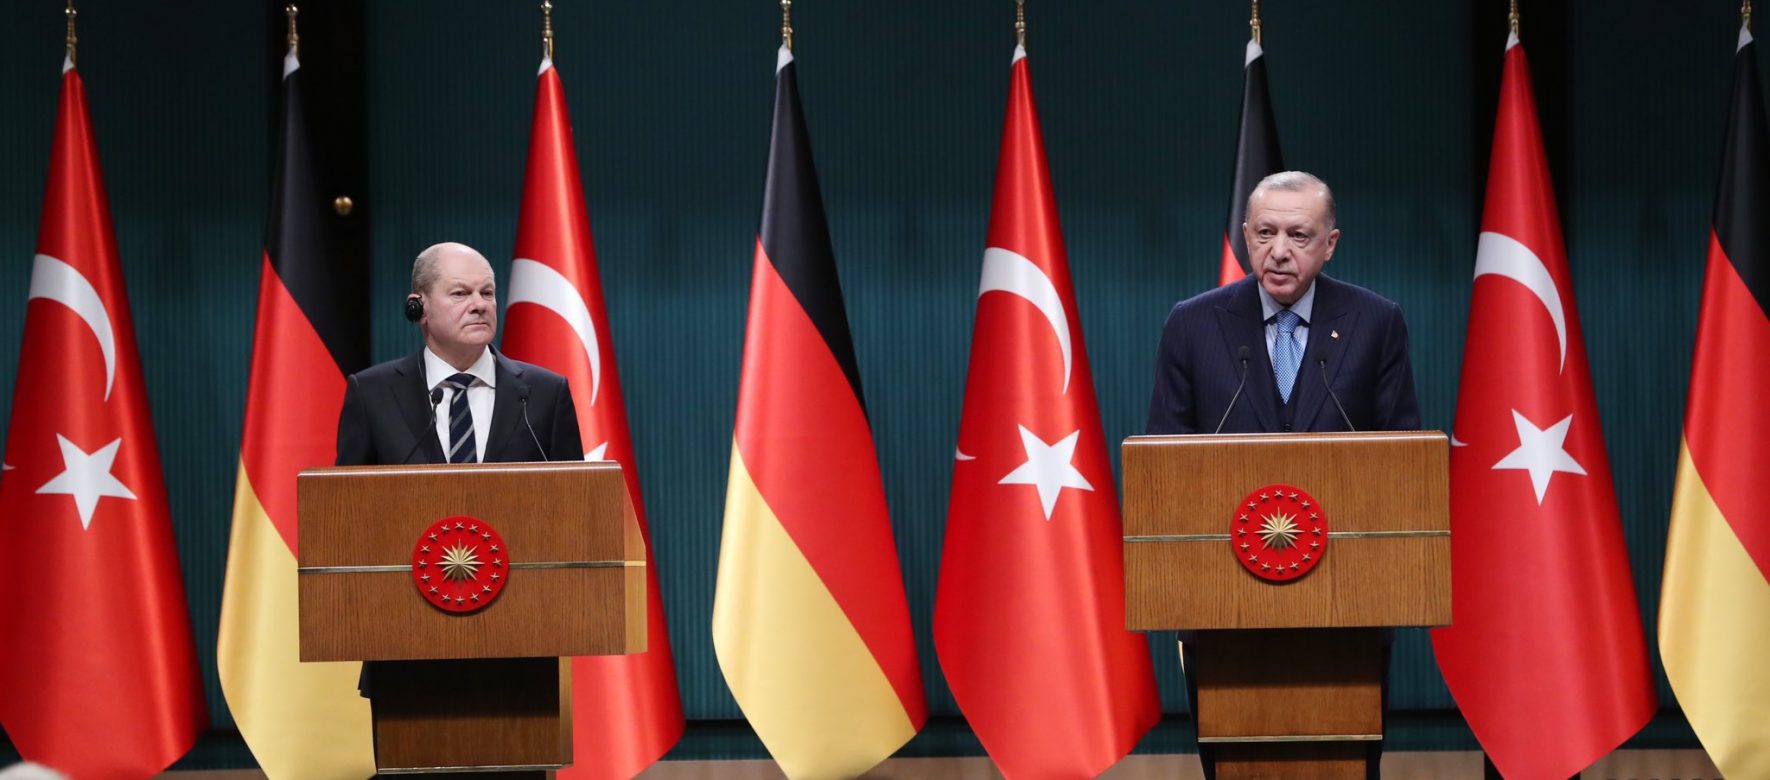 La Turquie et l'Allemagne veulent intensifier leurs efforts diplomatiques pour trouver une solution au conflit ukrainien